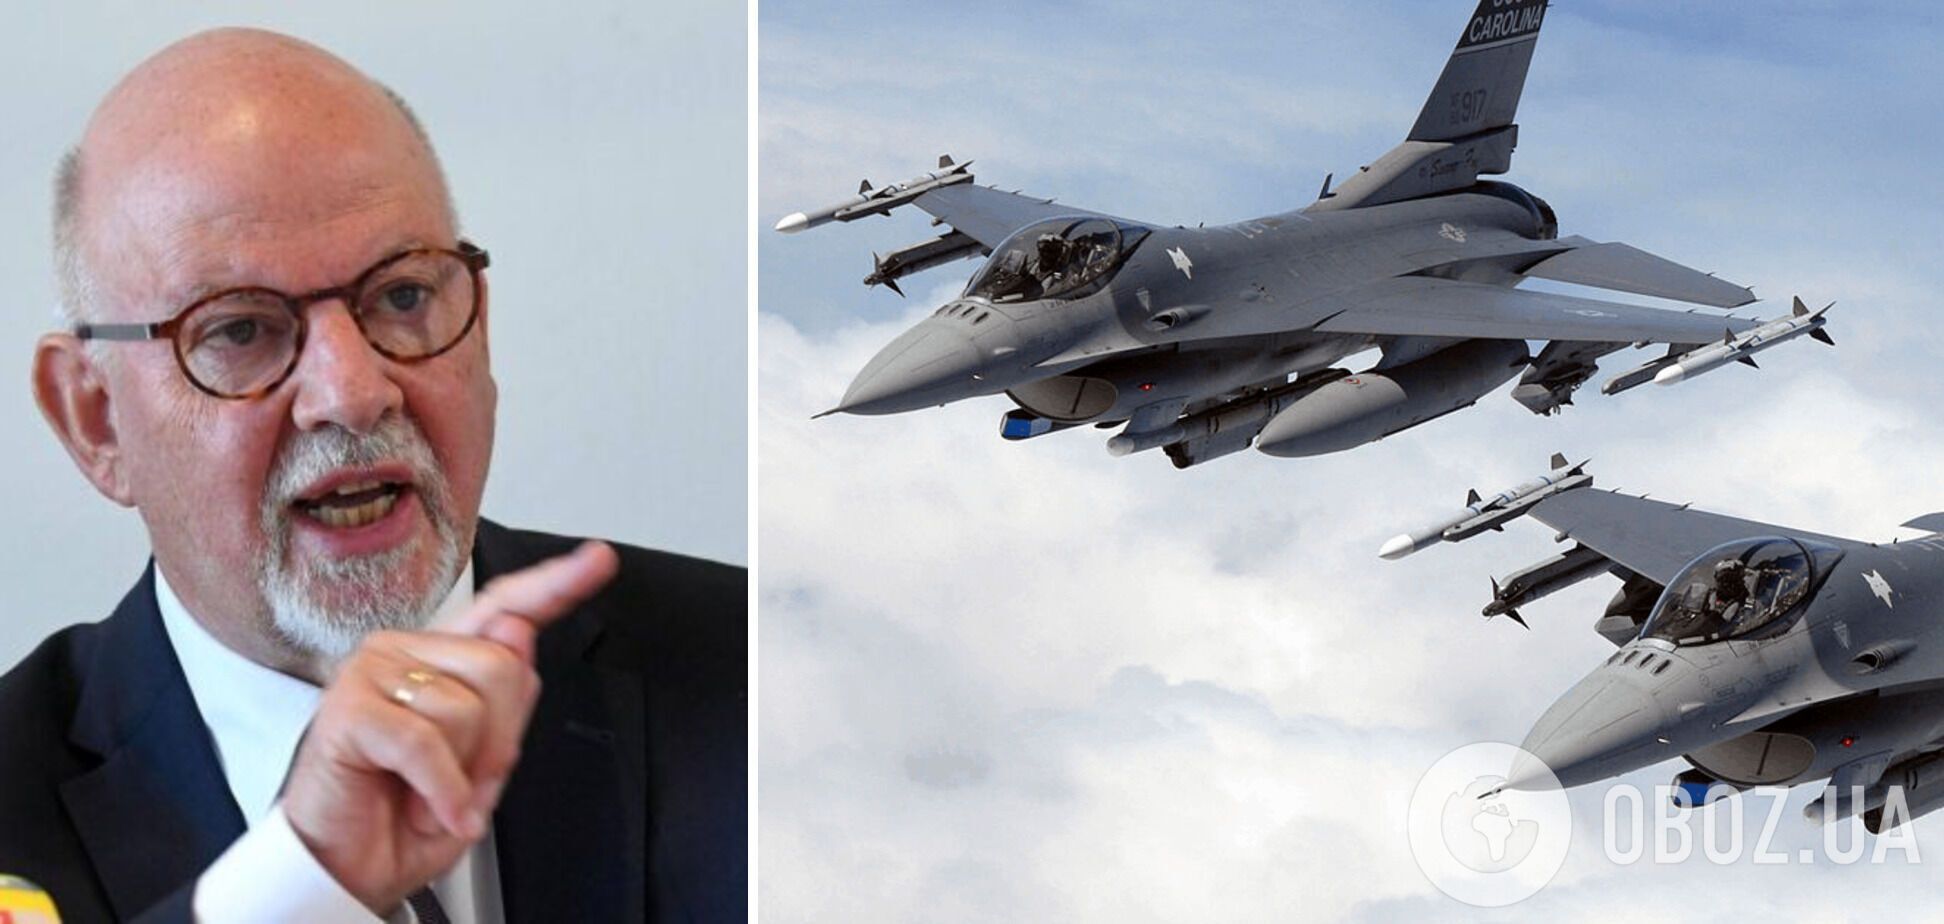 Мартін Екснер закликав надати Україні бойові літаки